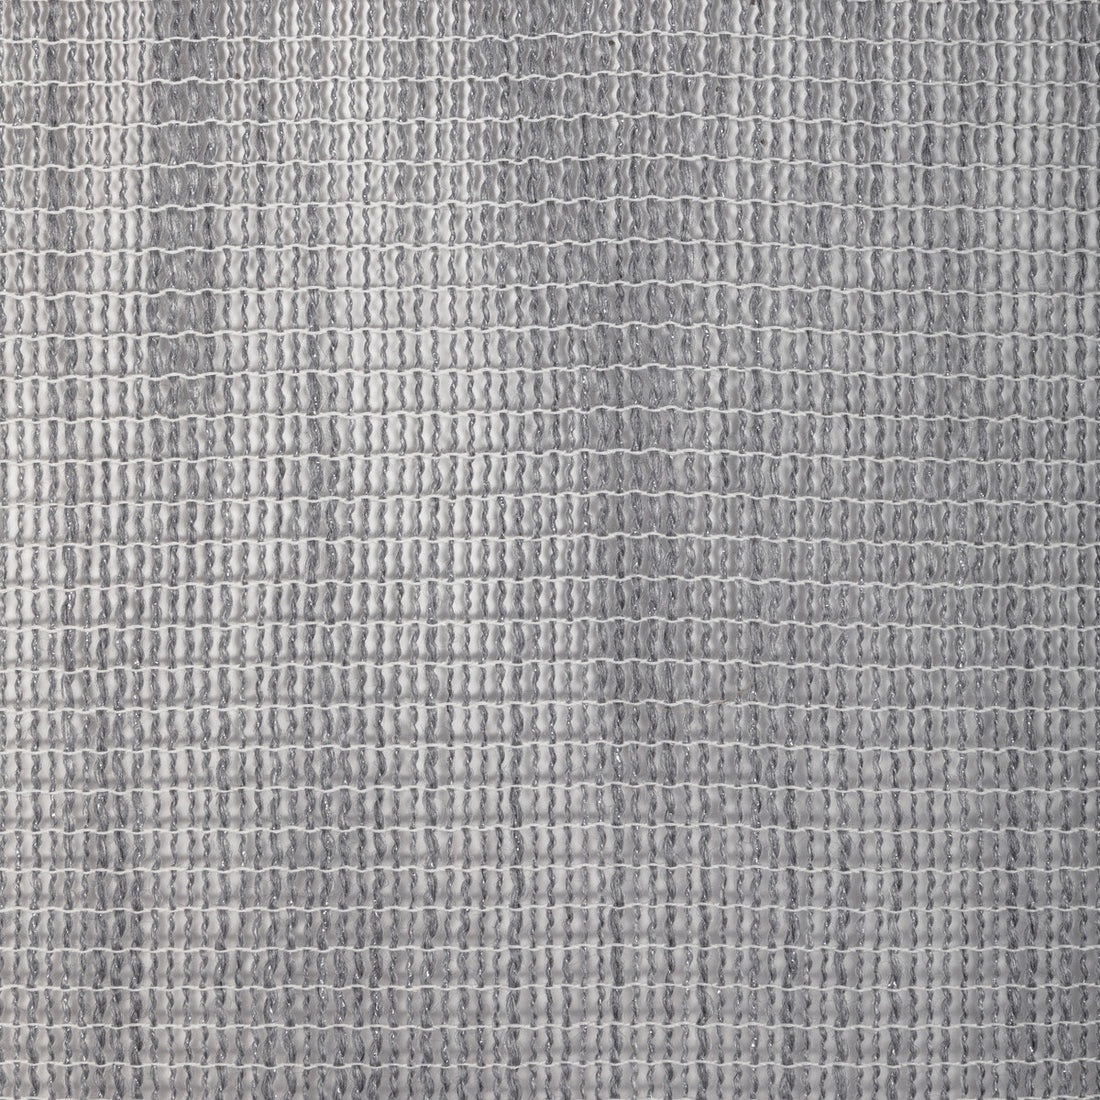 Kravet Design fabric in 4922-11 color - pattern 4922.11.0 - by Kravet Design